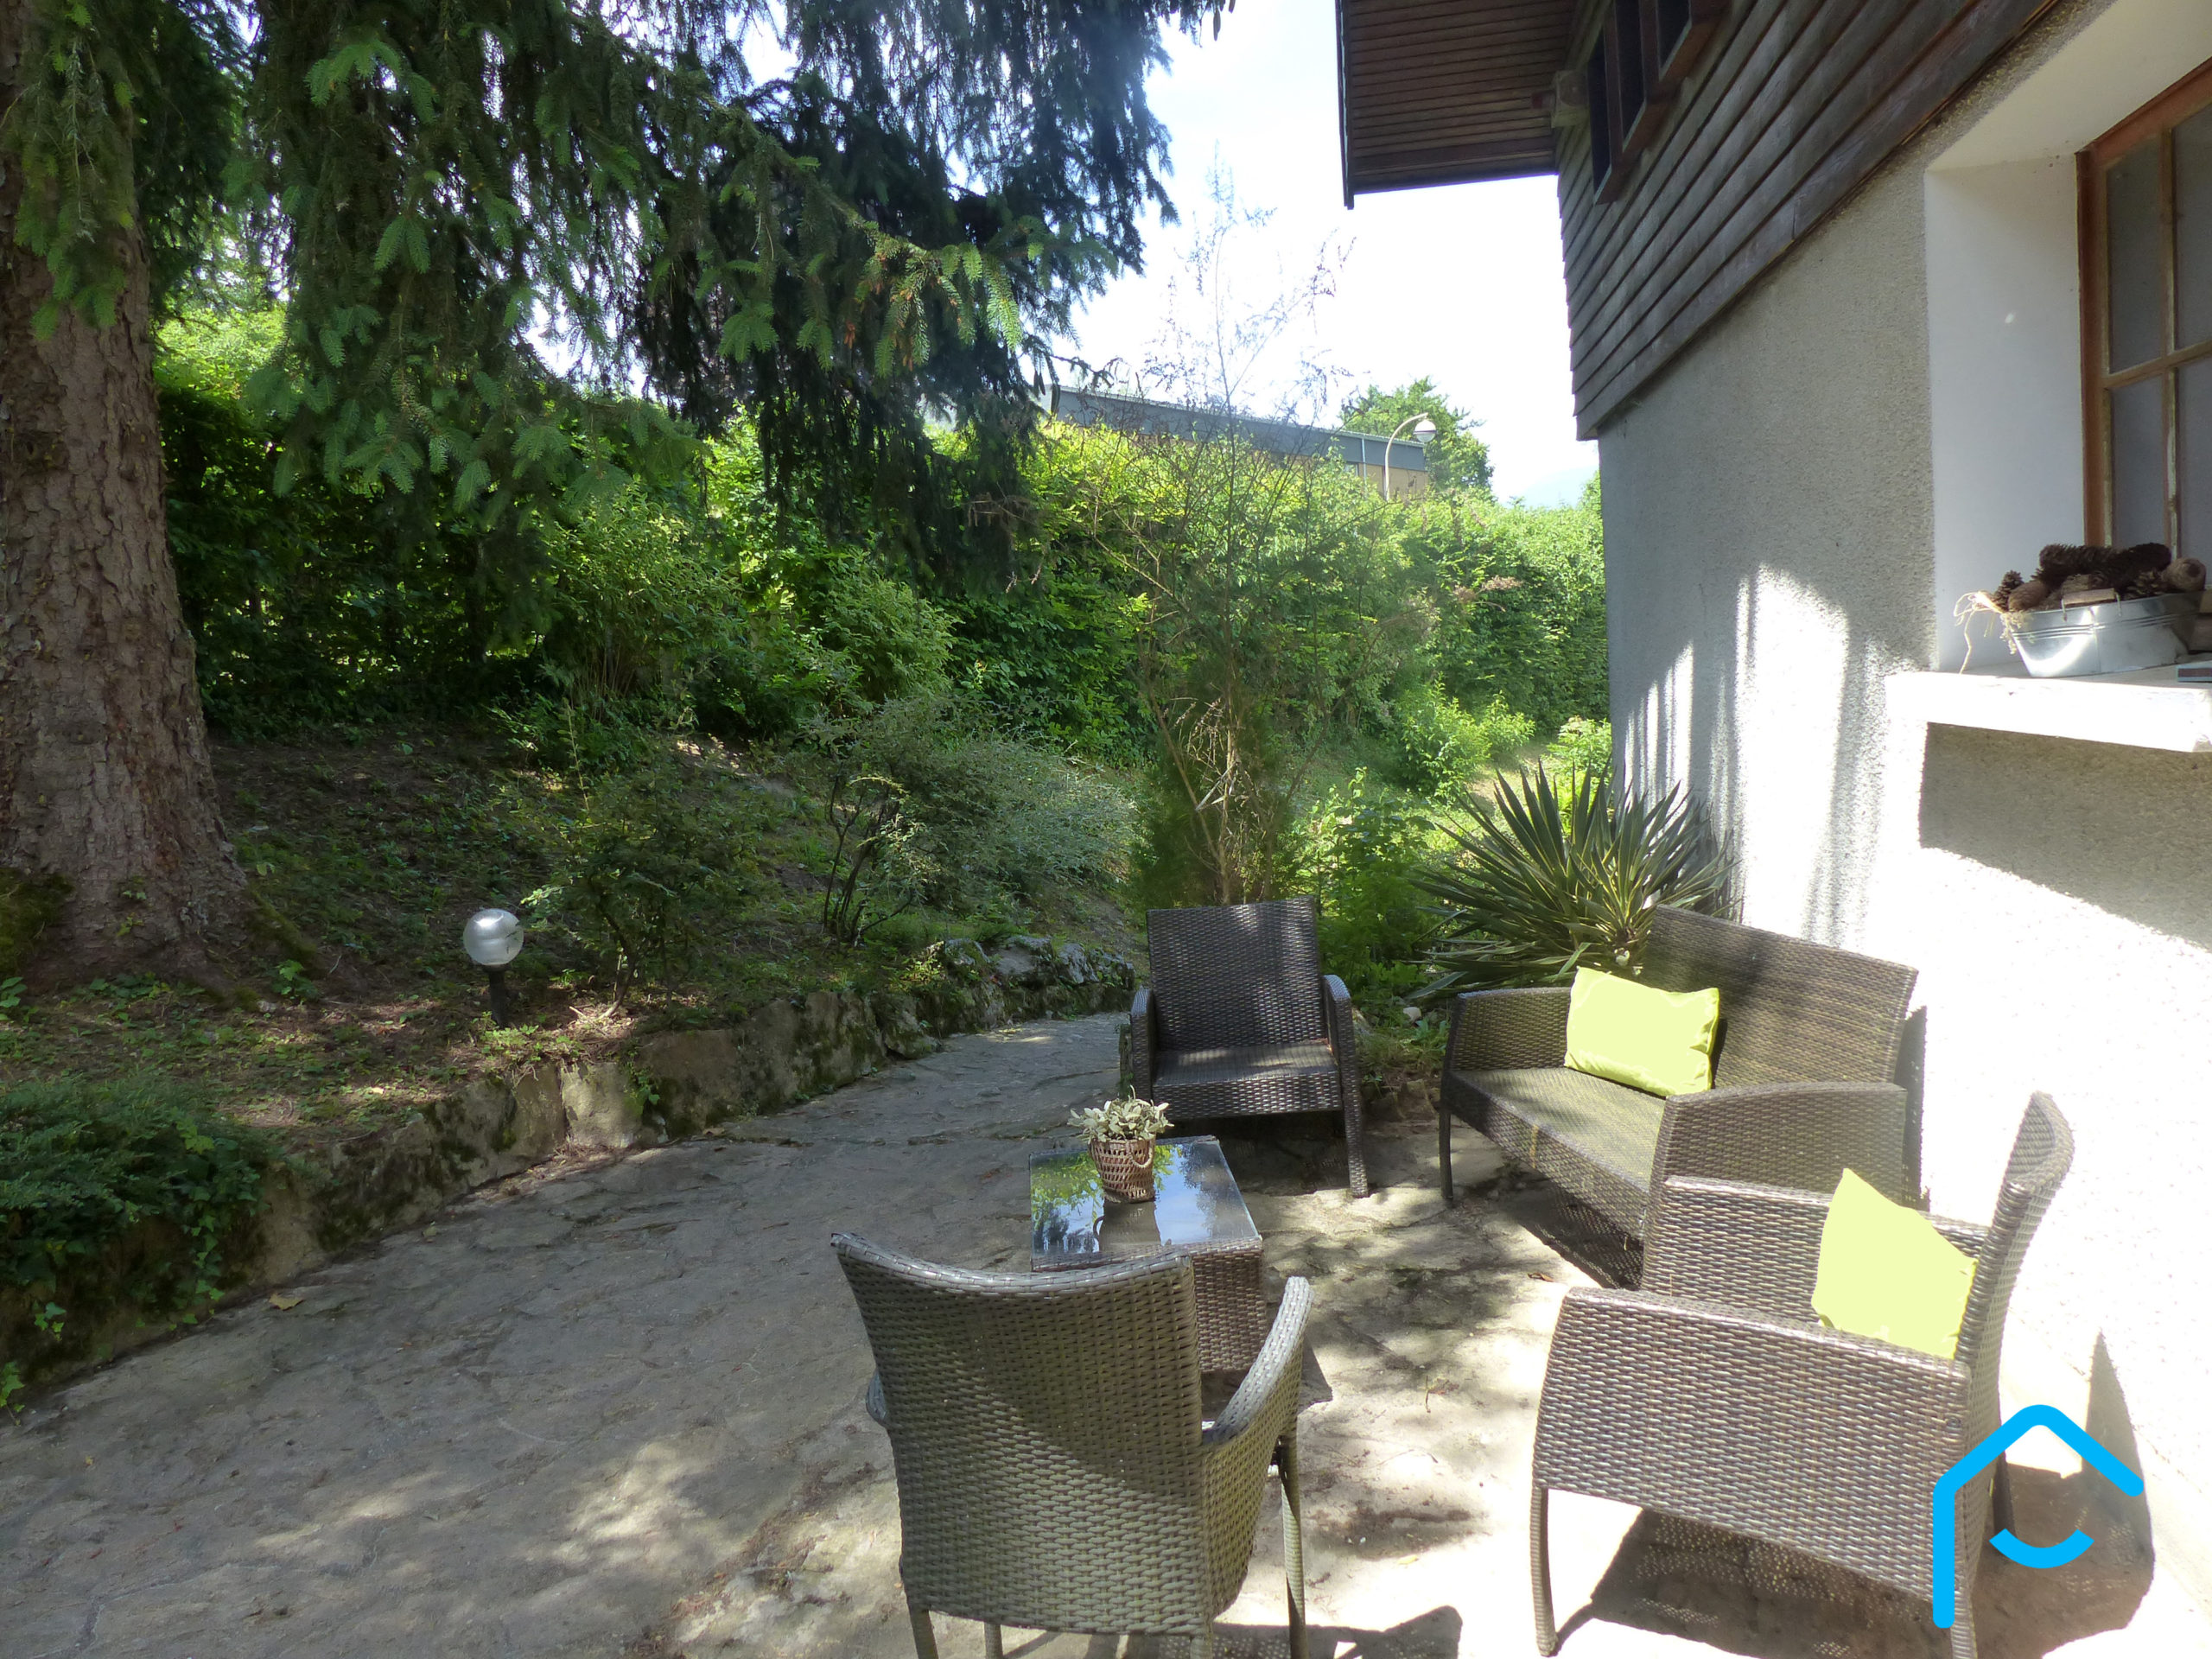 A vendre Savoie Chambéry Jacob-Bellecombette maison individuelle terraini 5 chambres quartier résidentiel rare à la vente vue 21